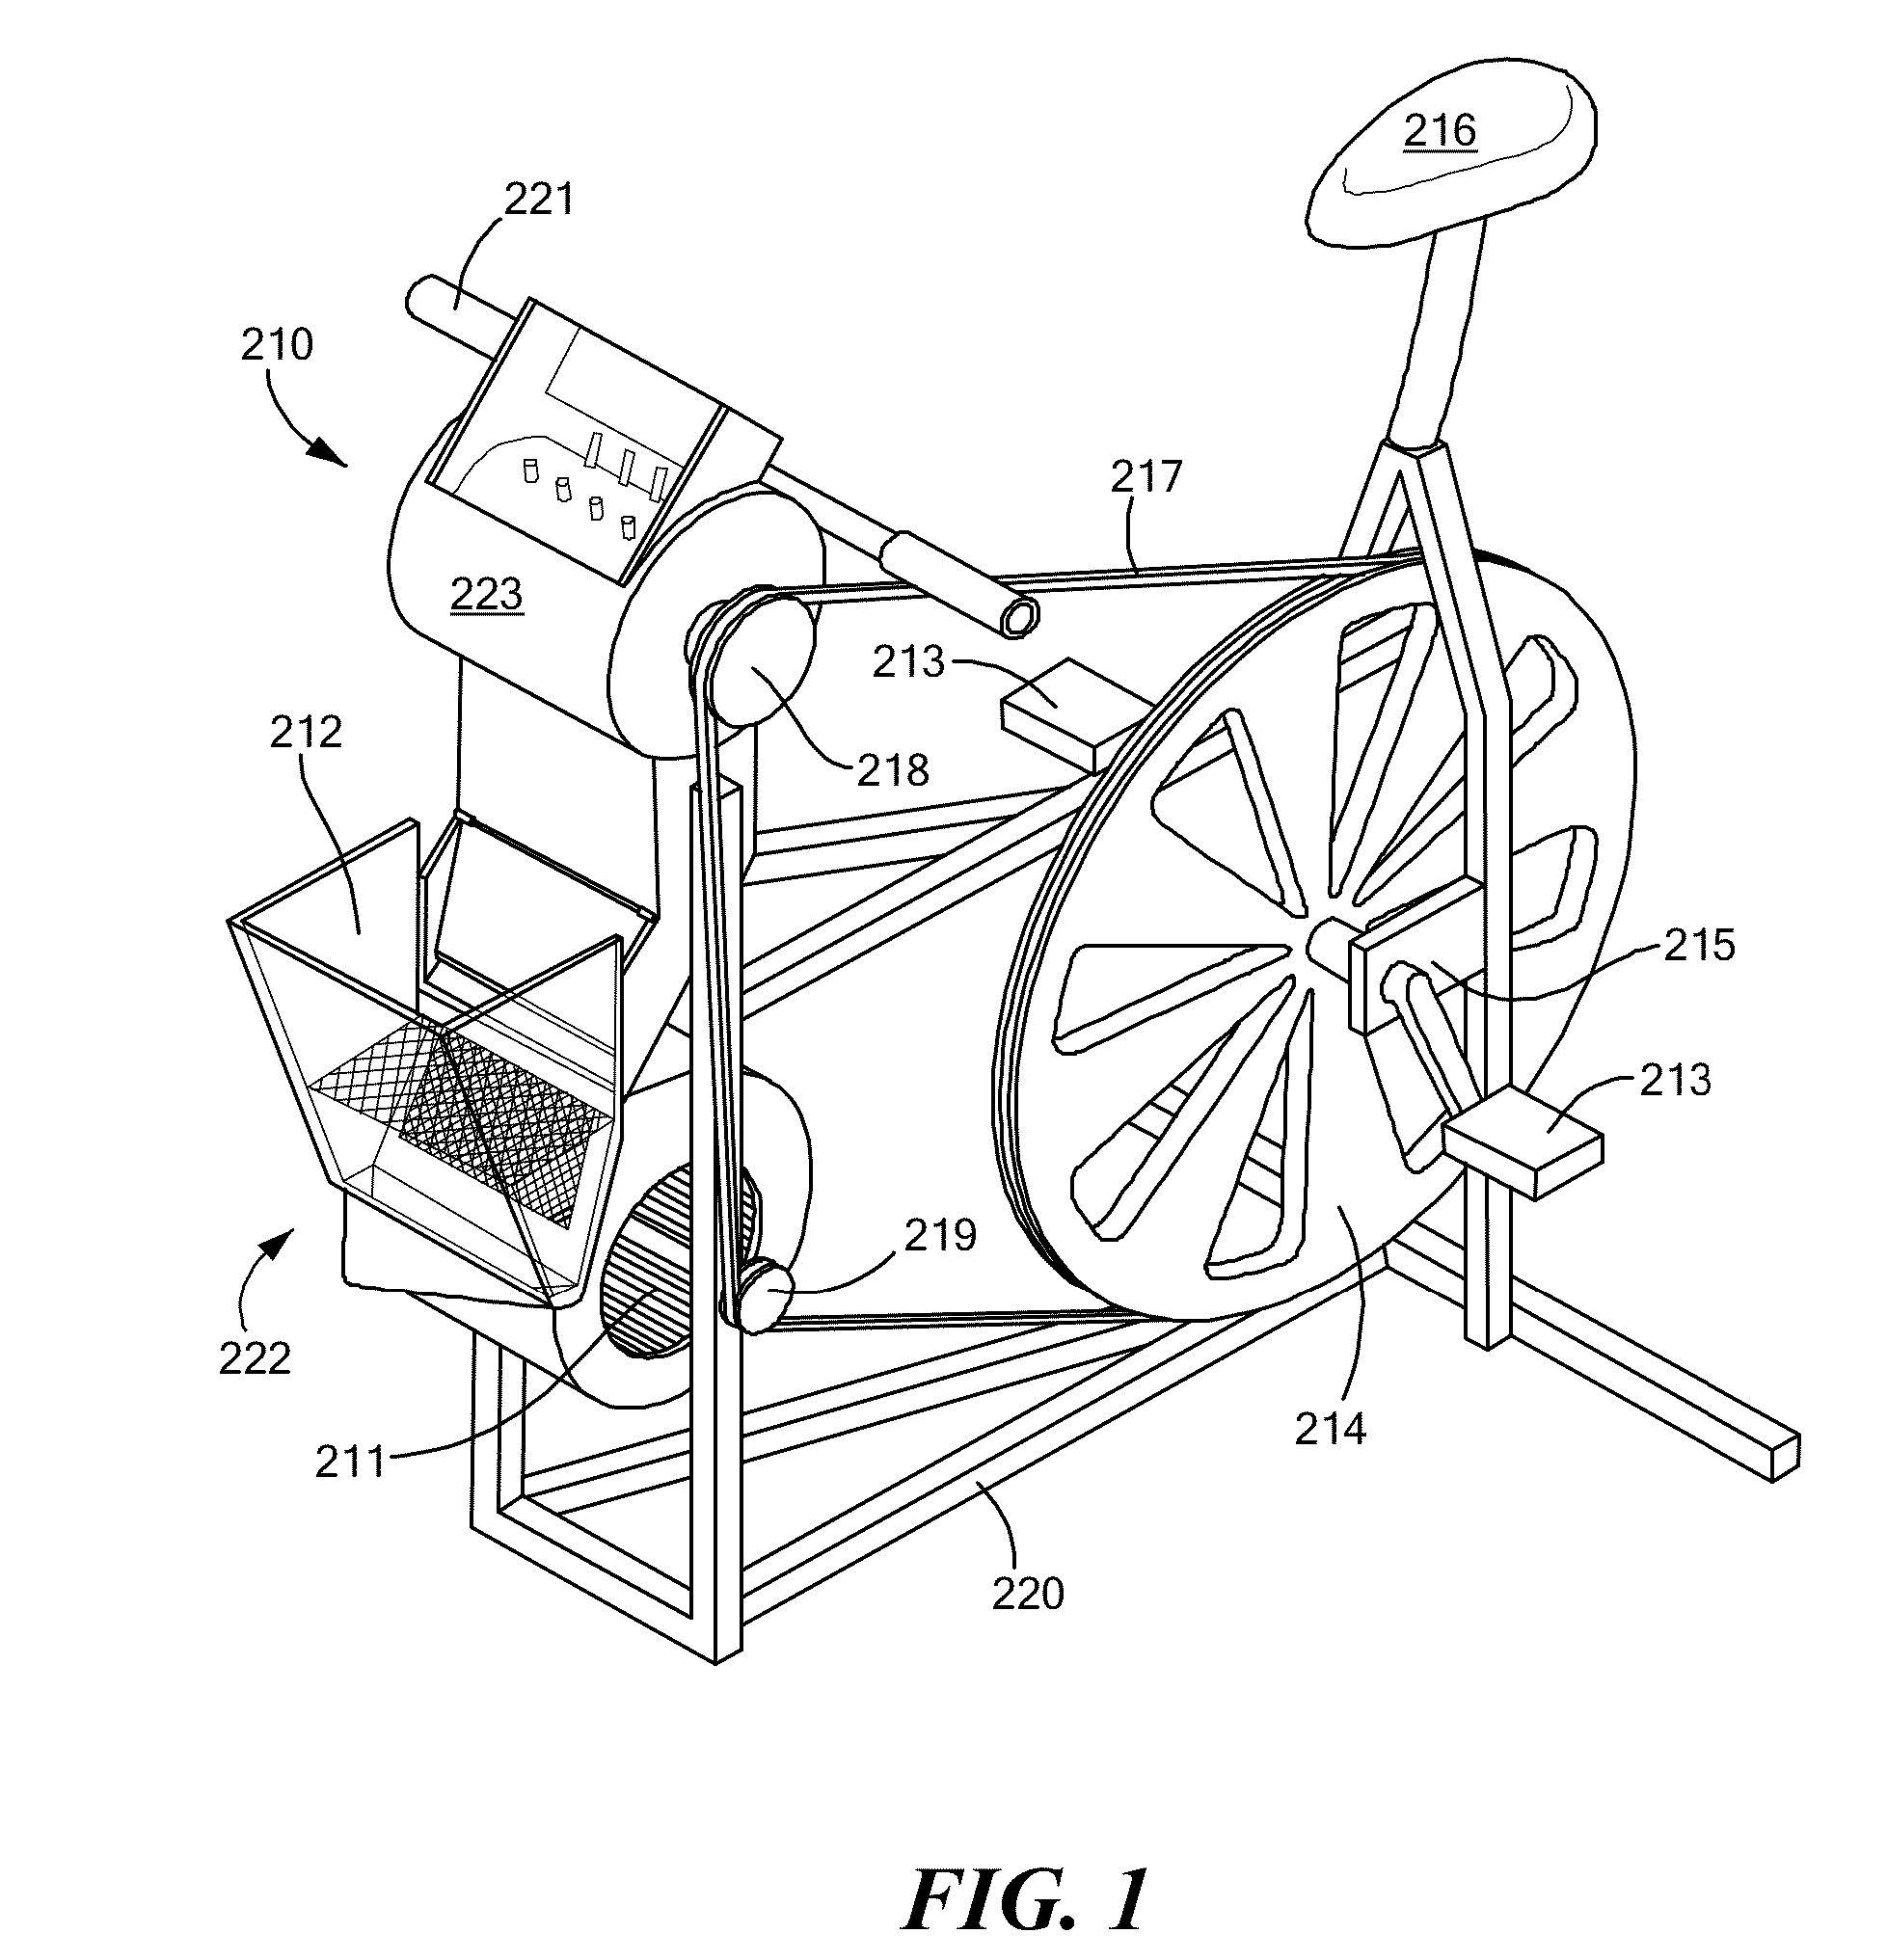 Pedal-Operated Threshing Machine